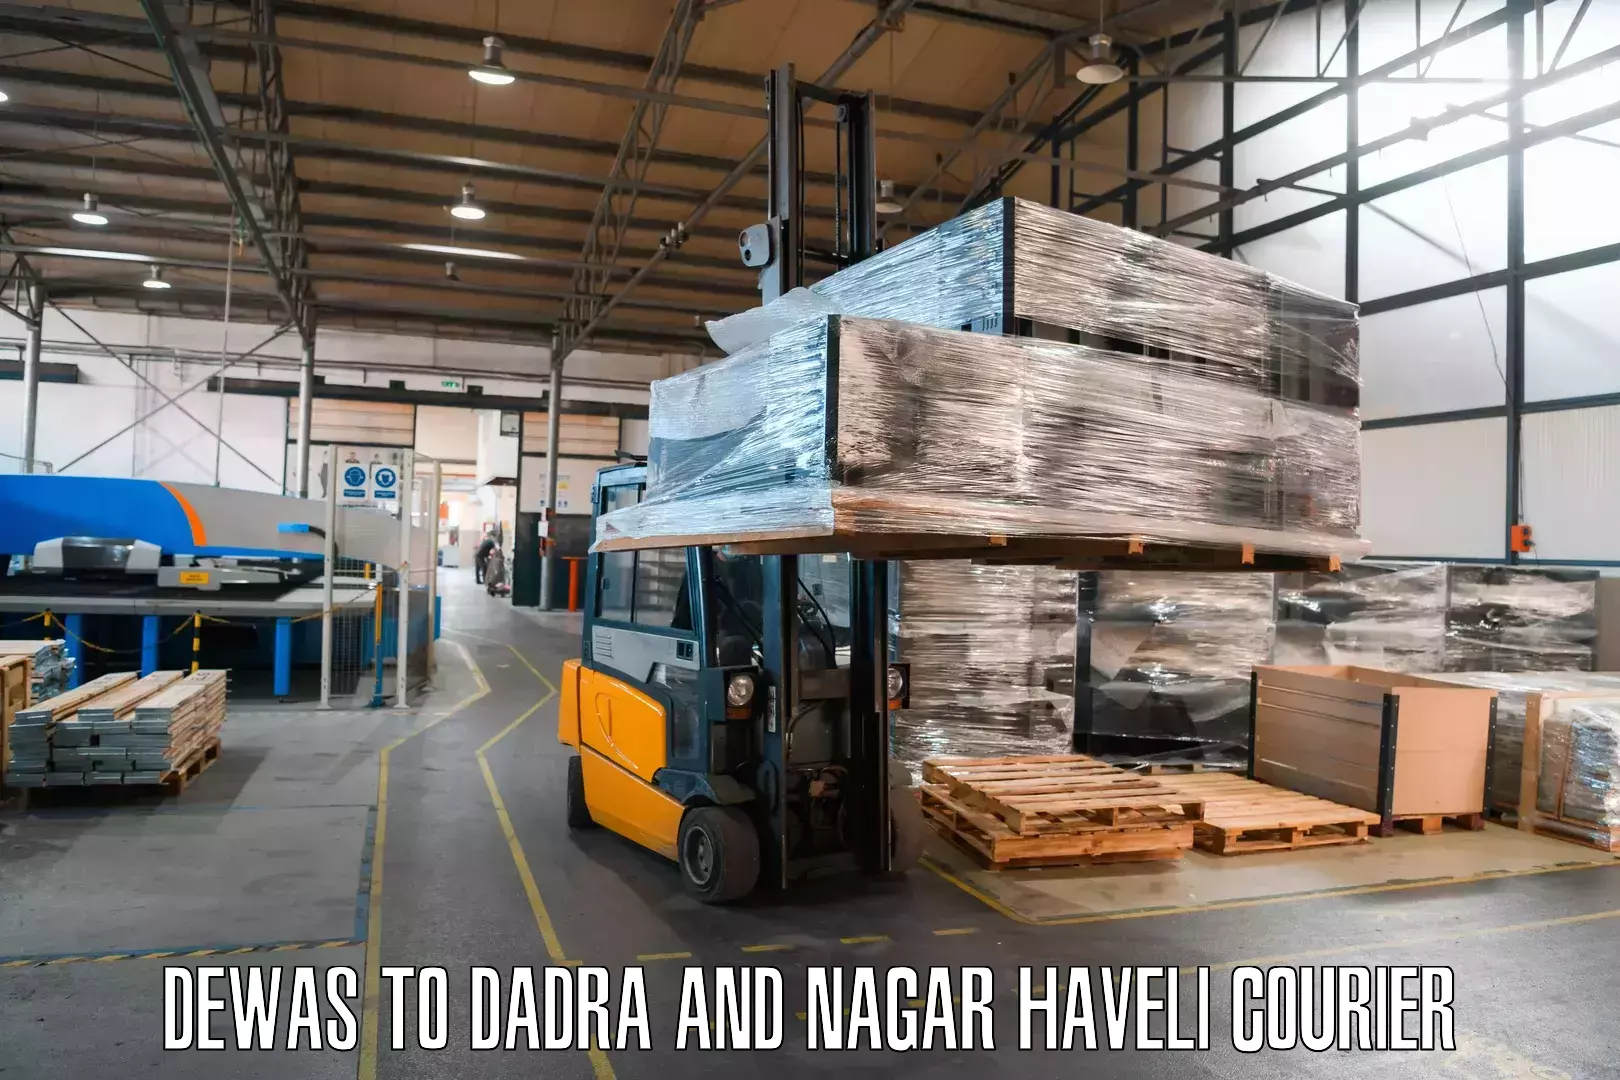 Specialized shipment handling Dewas to Silvassa